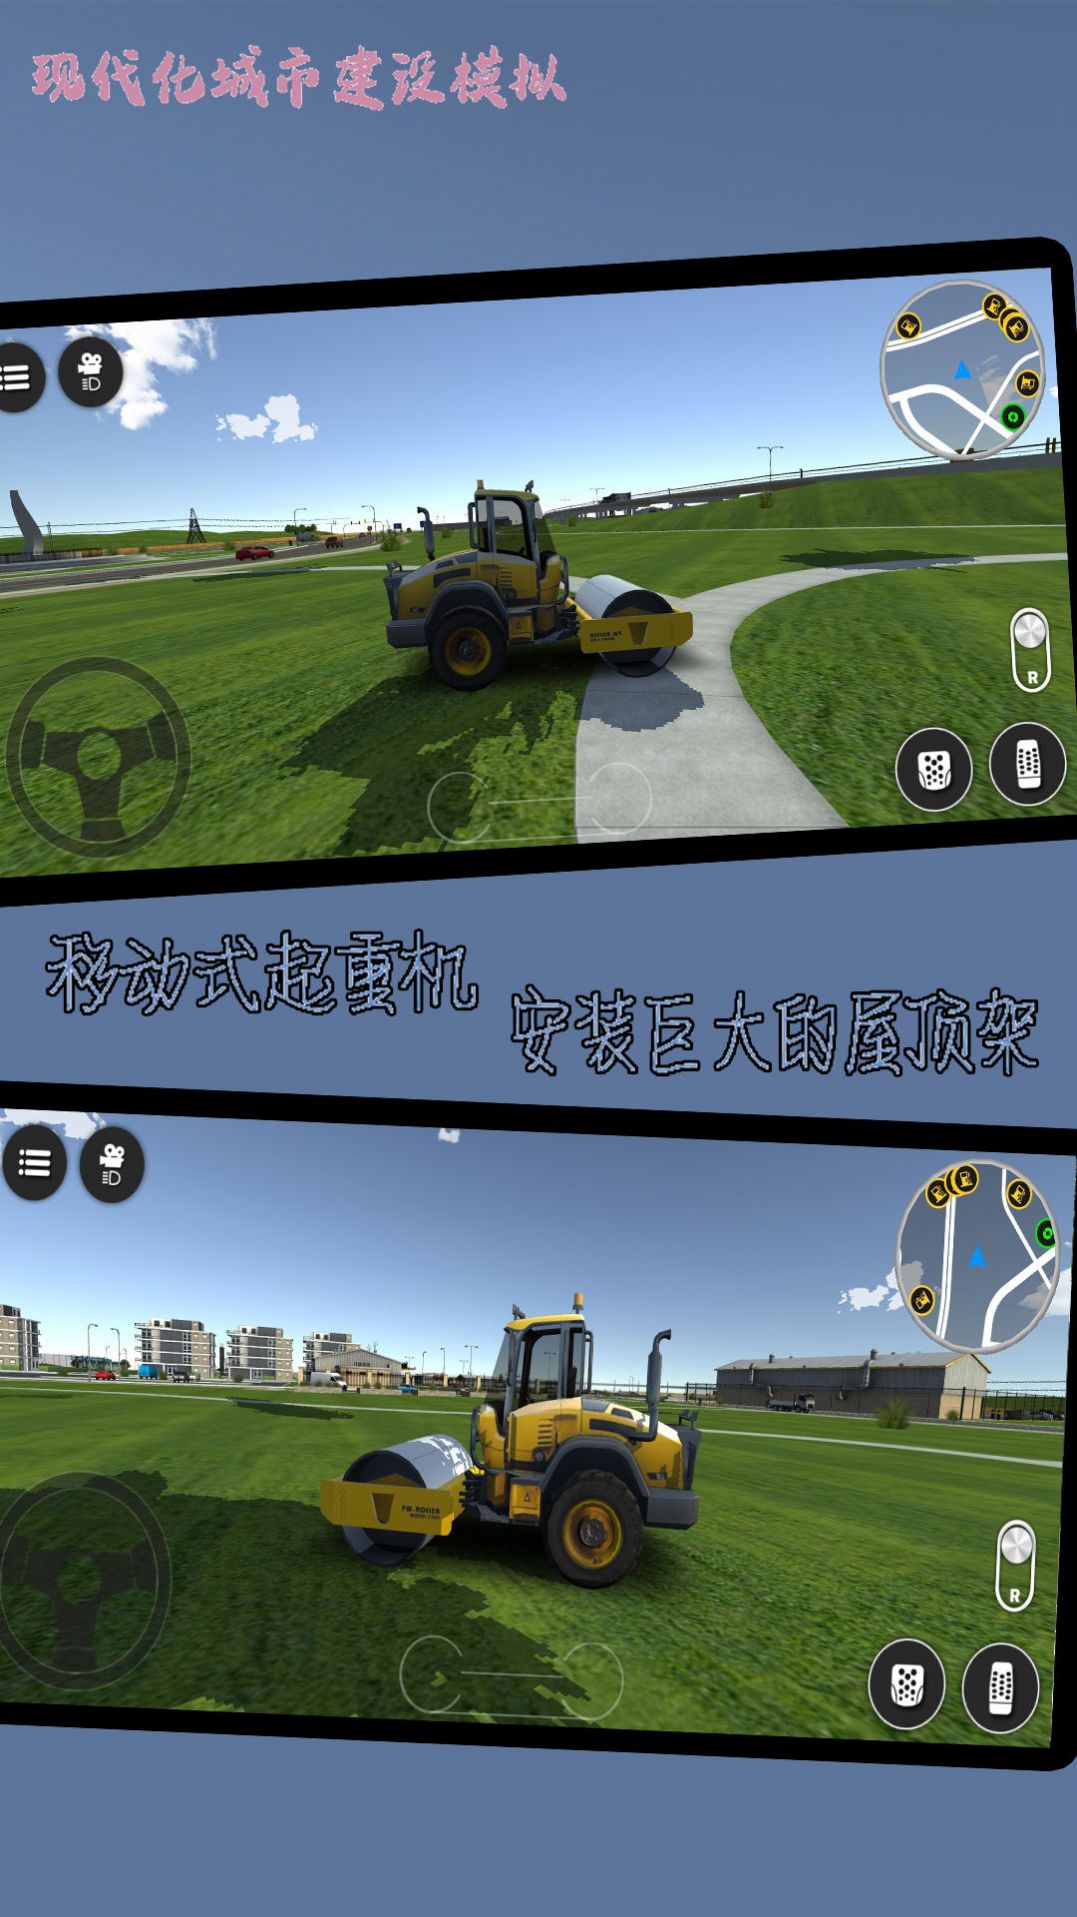 现代化城市建设模拟手游下载 v1021.101.10 安卓版 2